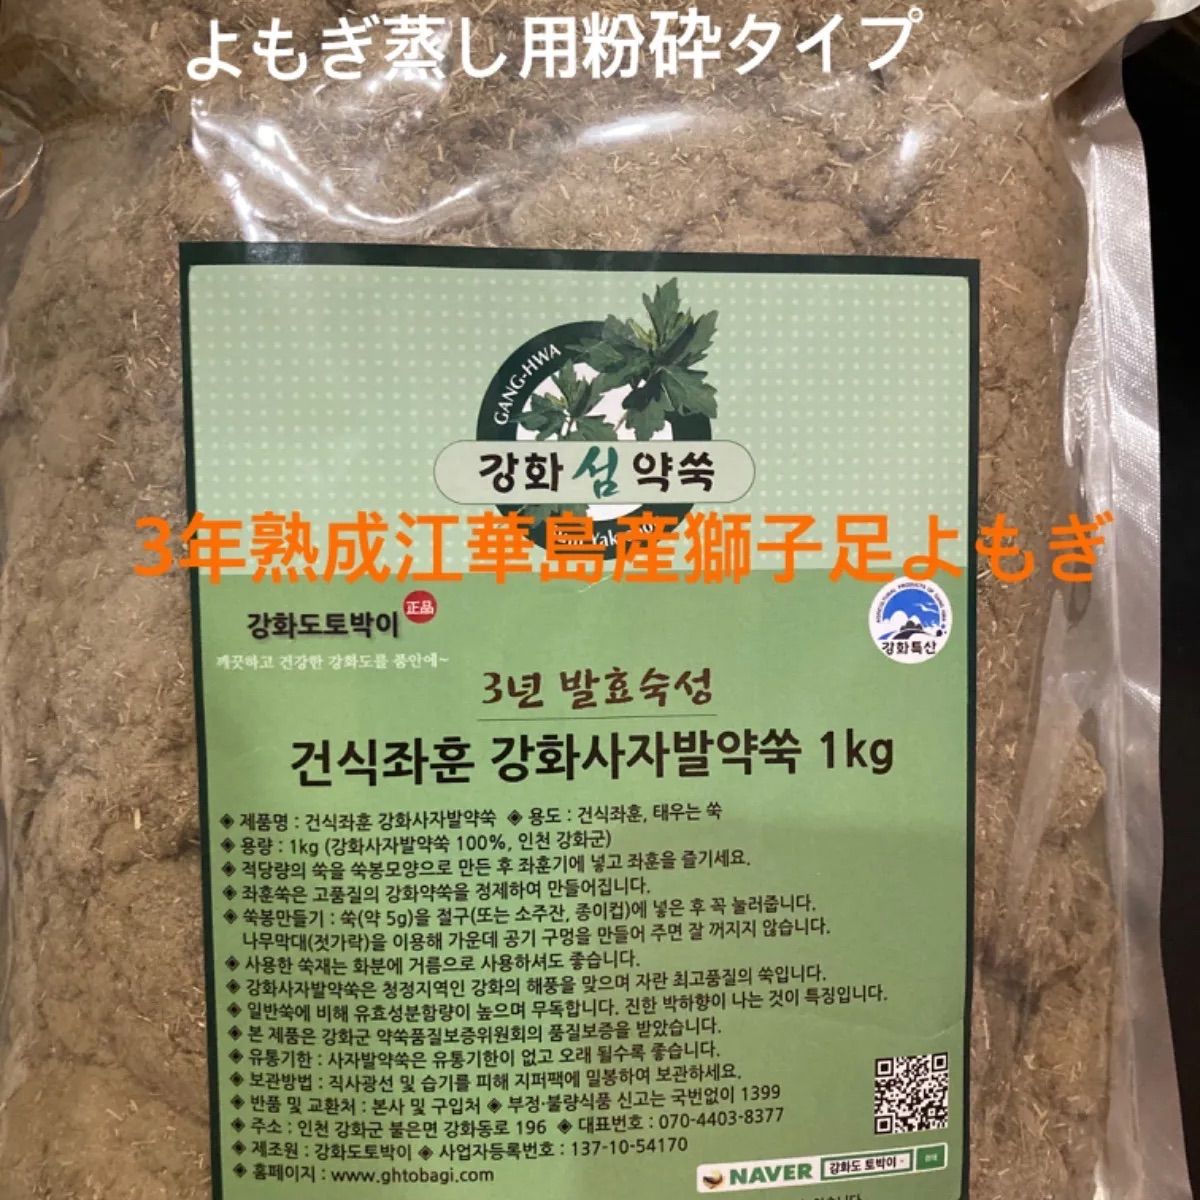 よもぎ蒸し用韓国江華島産の3年熟成獅子足よもぎ1キロ/100% 粉砕タイプ 